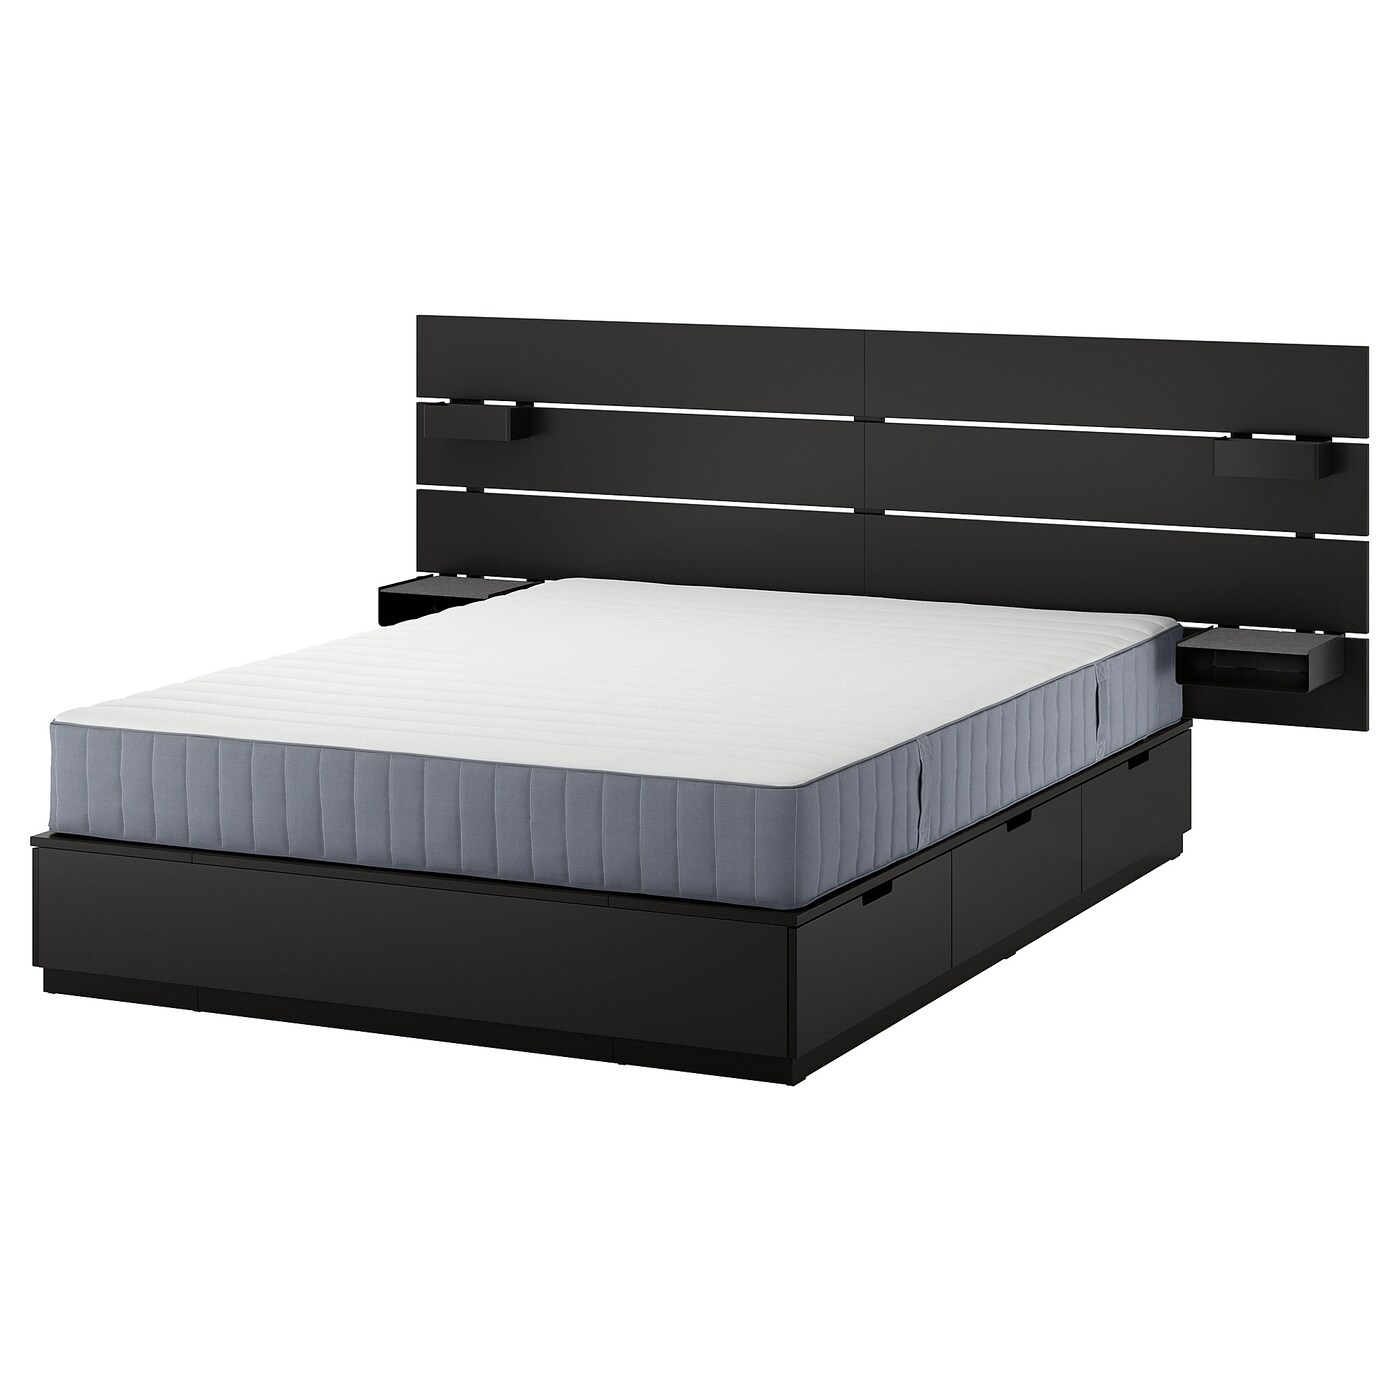 Каркас кровати с контейнером и матрасом - IKEA NORDLI, 200х160 см, матрас жесткий, черный, НОРДЛИ ИКЕА